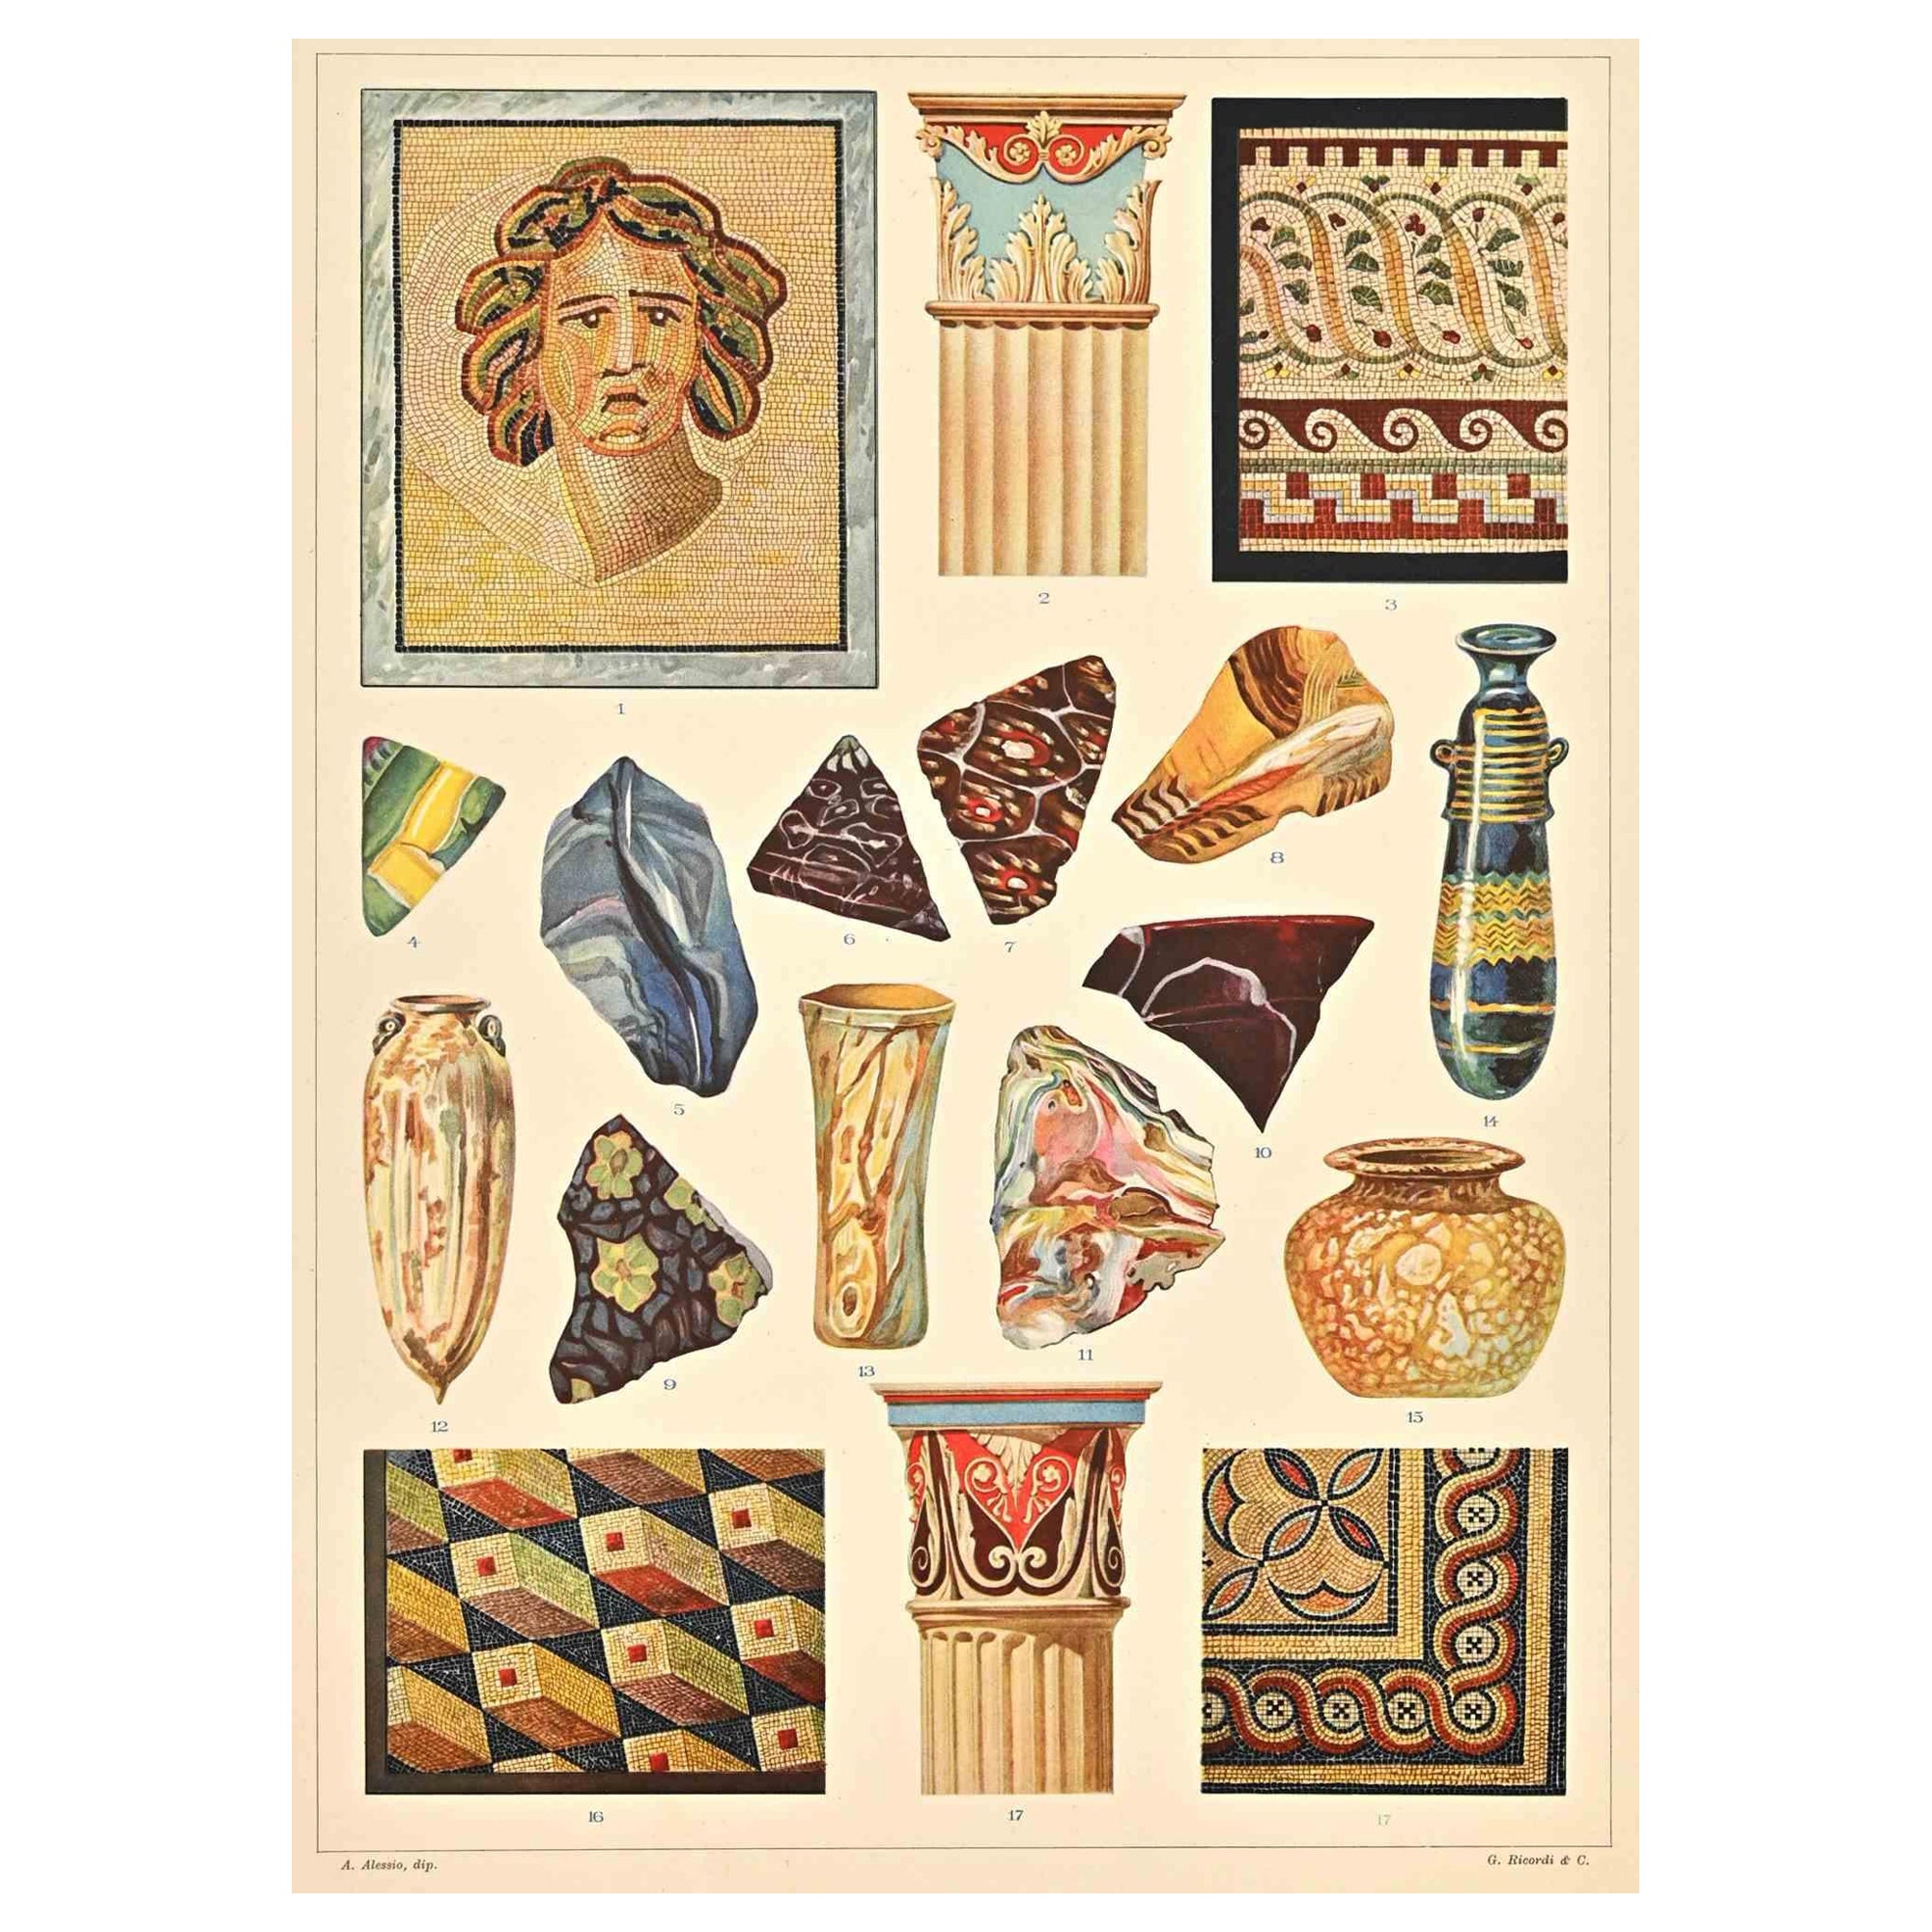 Dekorative Motive - Römische Stile ist ein Druck auf elfenbeinfarbenem Papier von Andrea Alessio aus dem frühen 20. Jahrhundert. Signiert auf der Platte auf der Unterseite.

Vintage Chromolithographie.

Sehr guter Zustand.

Das Kunstwerk stellt